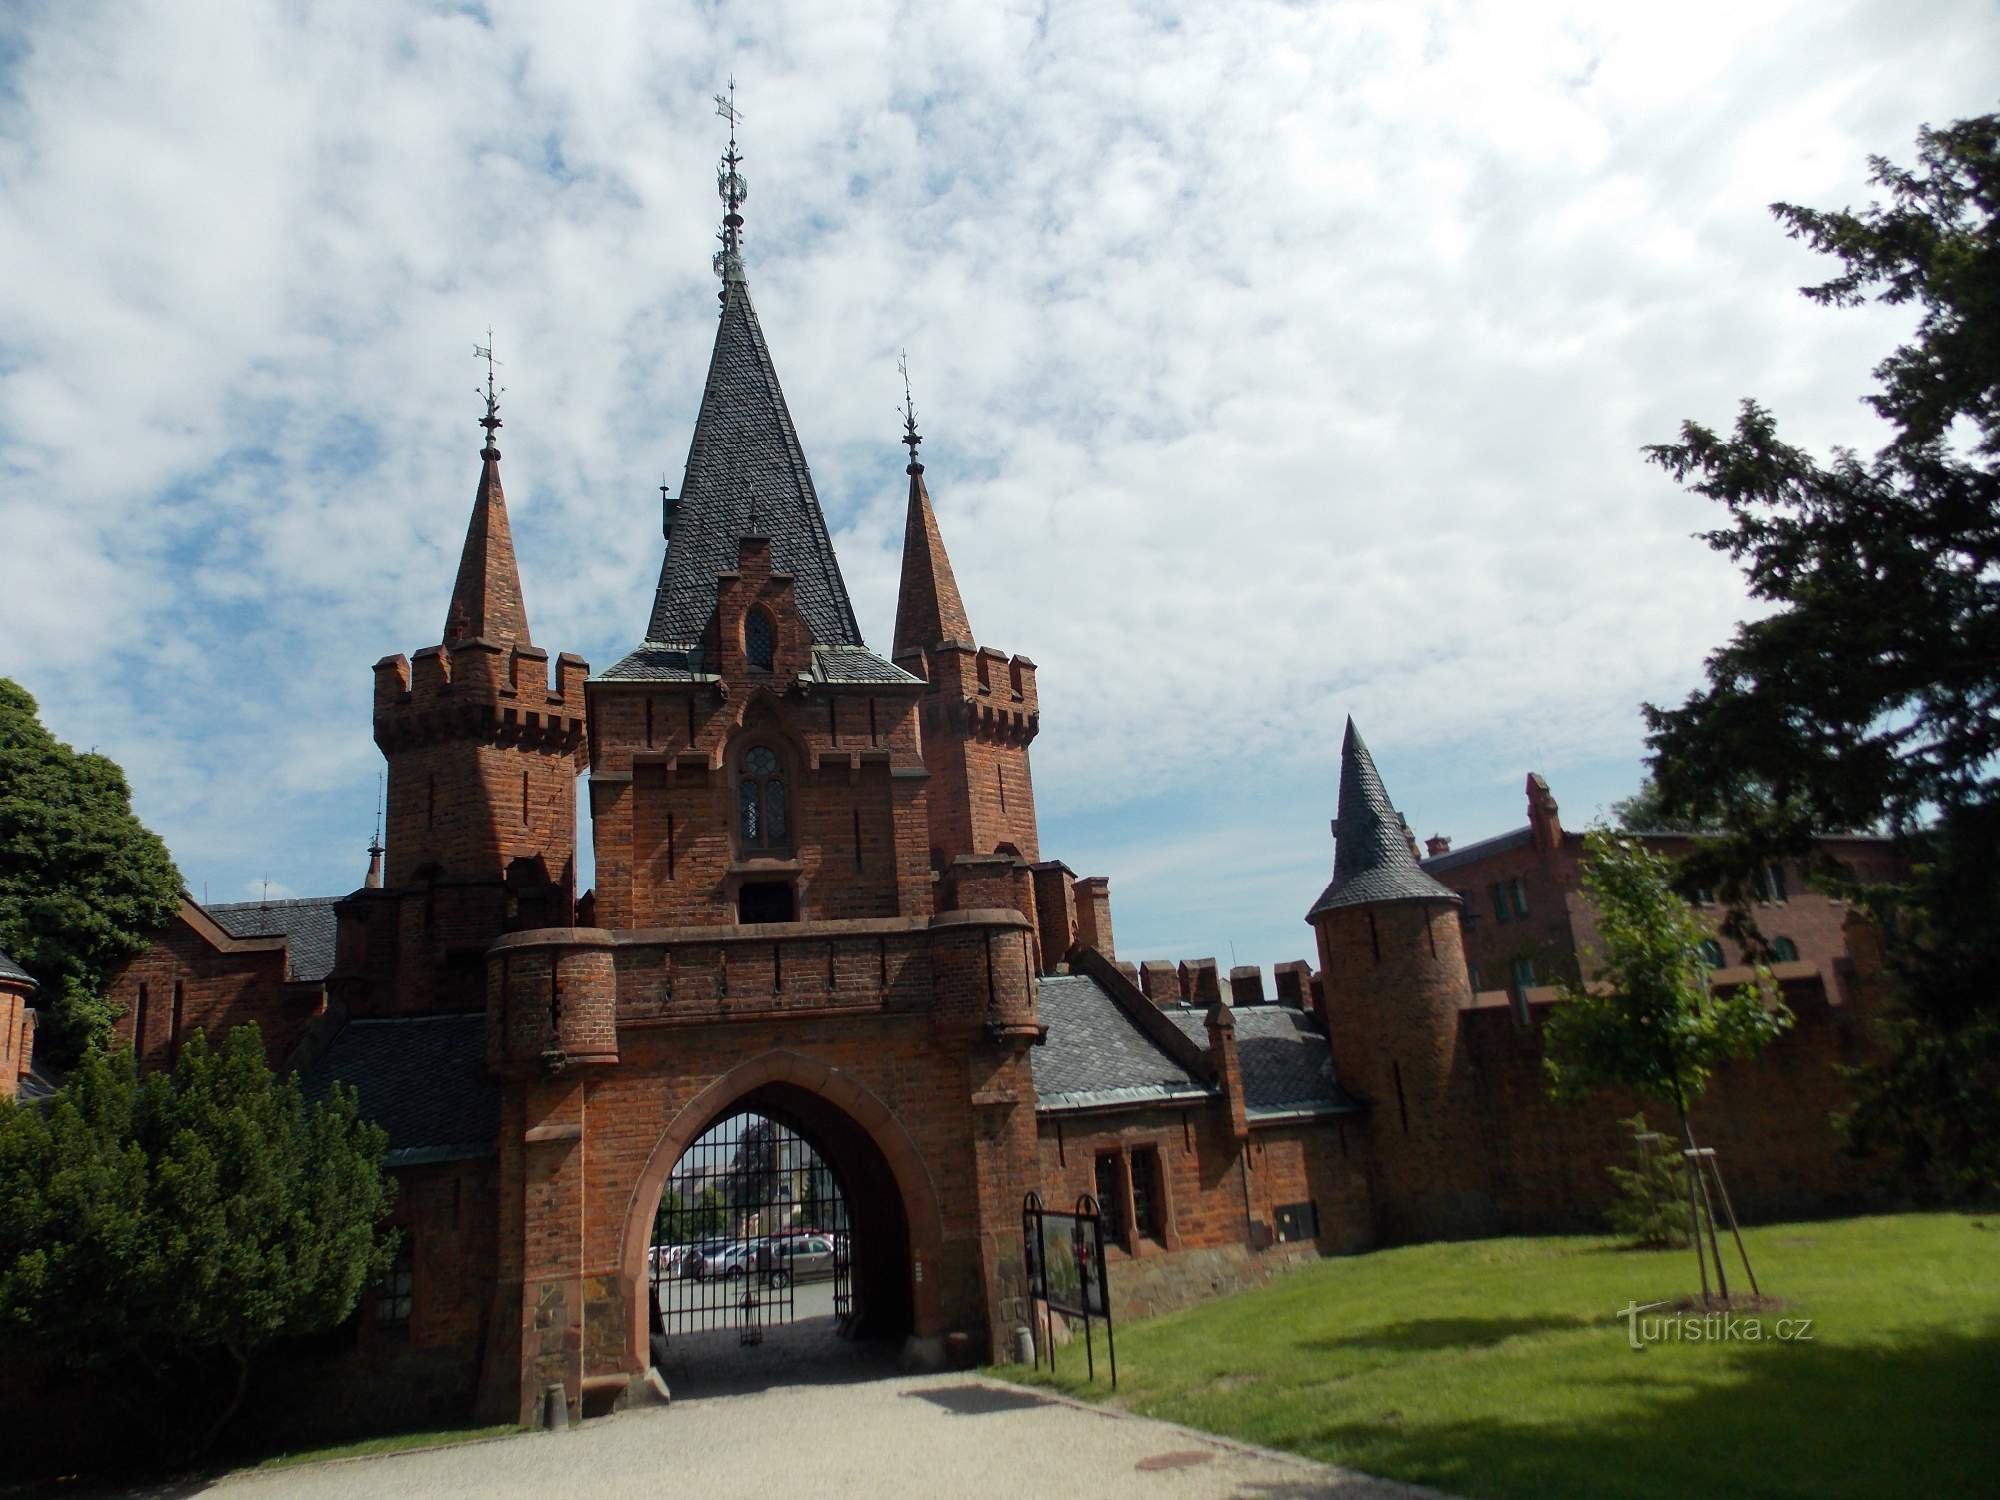 Atrás dos belos castelos da Silésia - para Hradec nad Moravicí